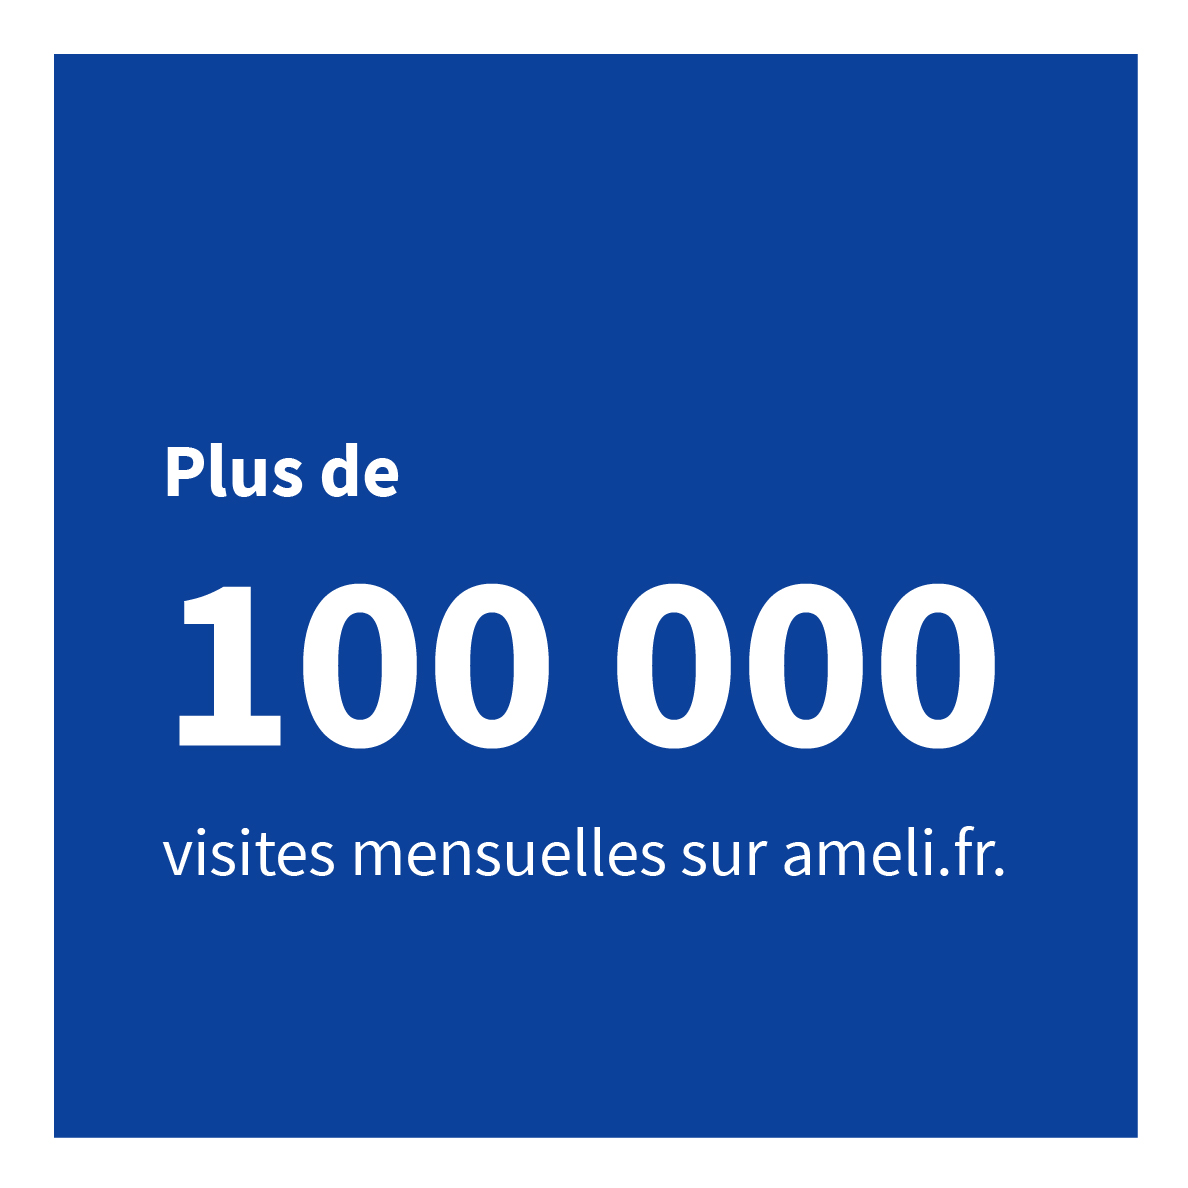 Plus de 100 000 visites mensuelles sur ameli.fr.